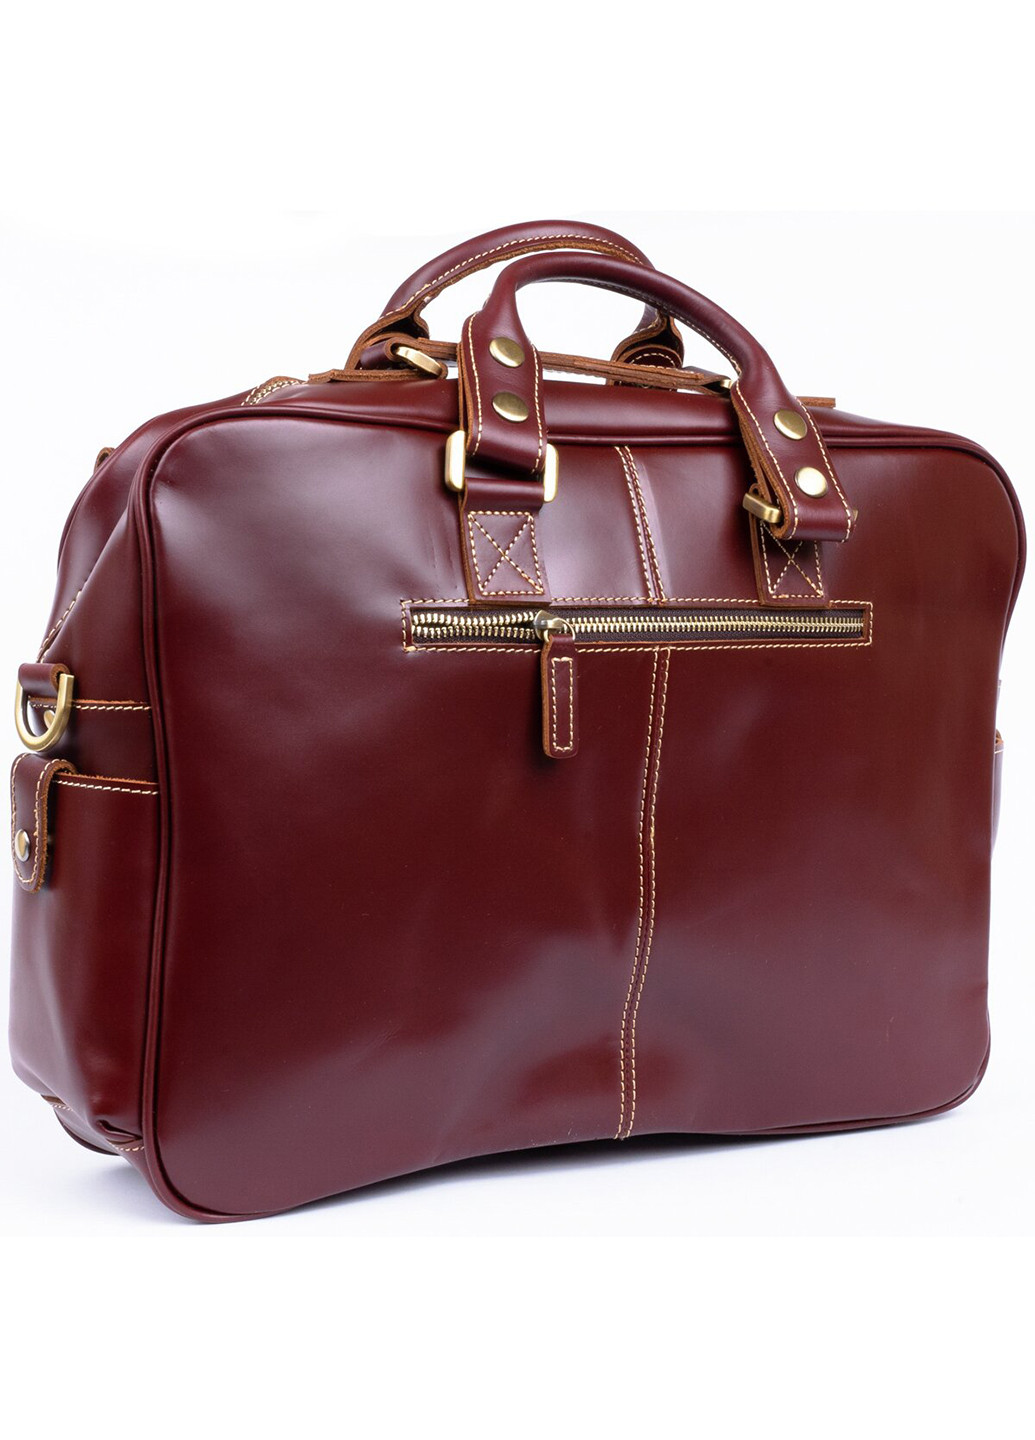 Дорожная кожаная сумка-портфель 40х29,5х10 см Vintage (229460691)